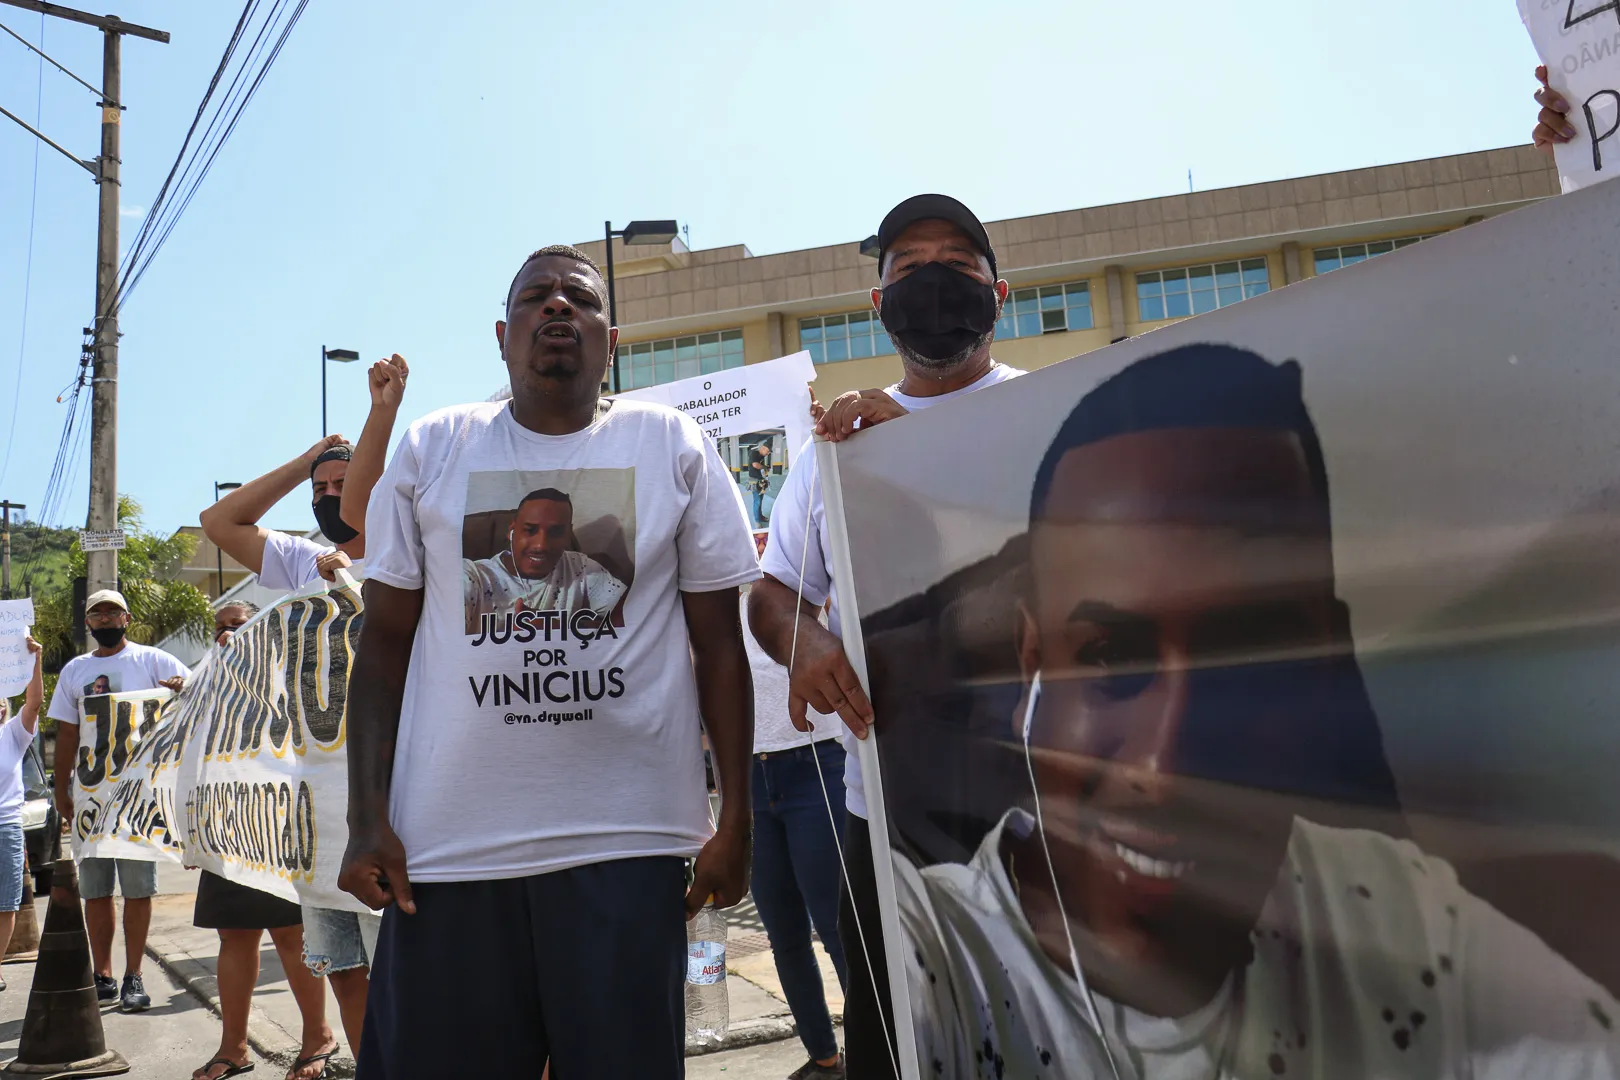 Amigos pediram justiça sobre a prisão de Luiz Vinicius.